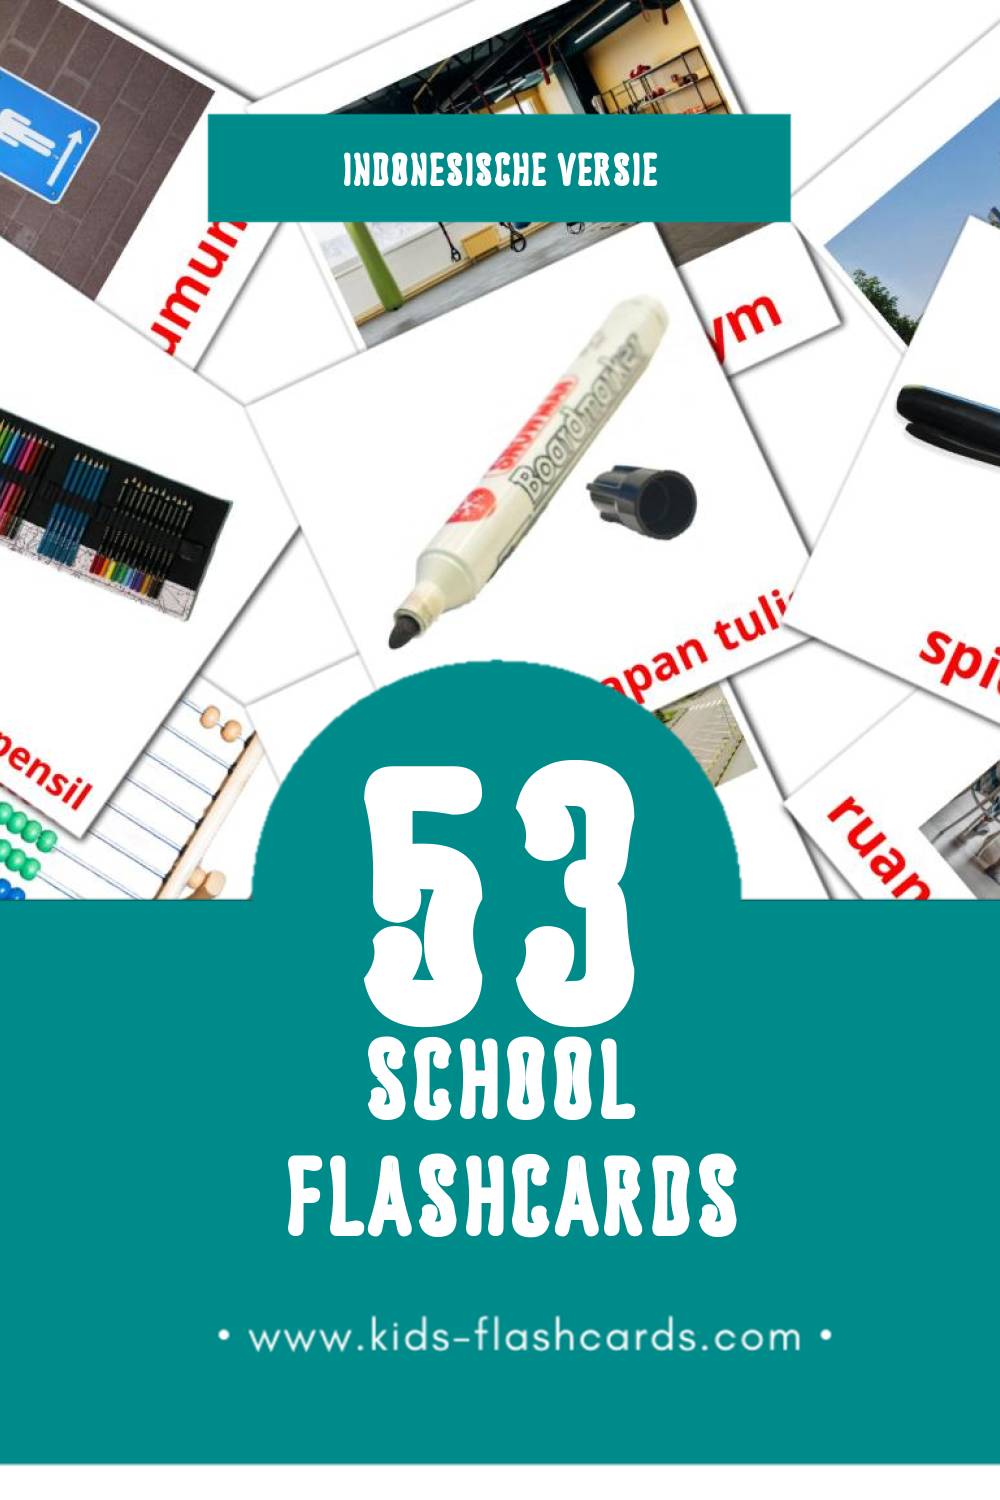 Visuele Sekolah Flashcards voor Kleuters (53 kaarten in het Indonesisch)